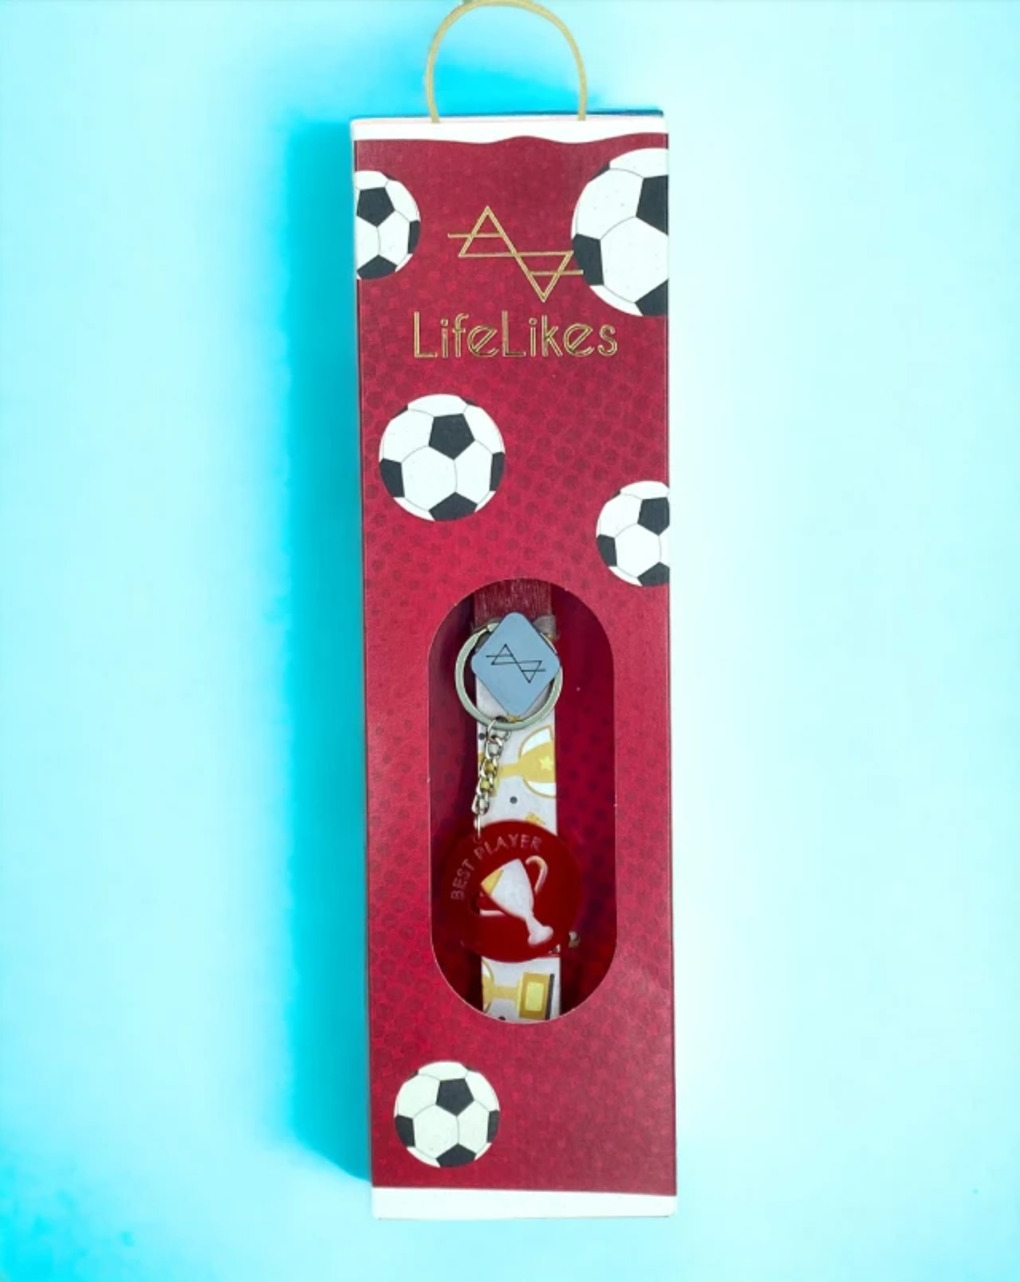 λαμπάδα lifelikes ποδόσφαιρο σε κουτί κόκκινο 04.29.00.000.3497 - Lifelikes